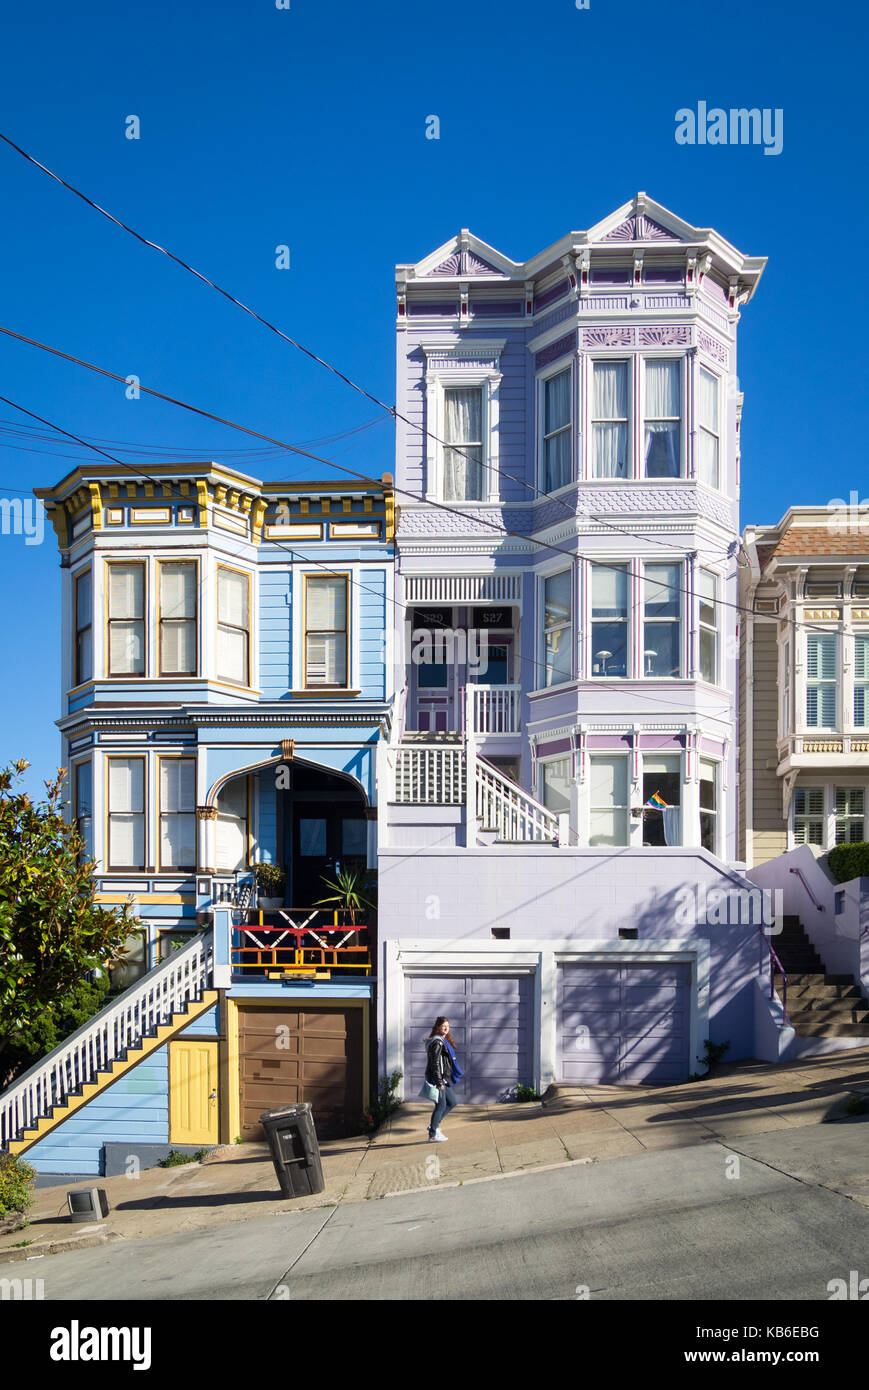 Une fille s'approche Sanchez Street (remarque Victorian-Italianate architecture) dans le quartier Castro de San Francisco, en Californie. Banque D'Images